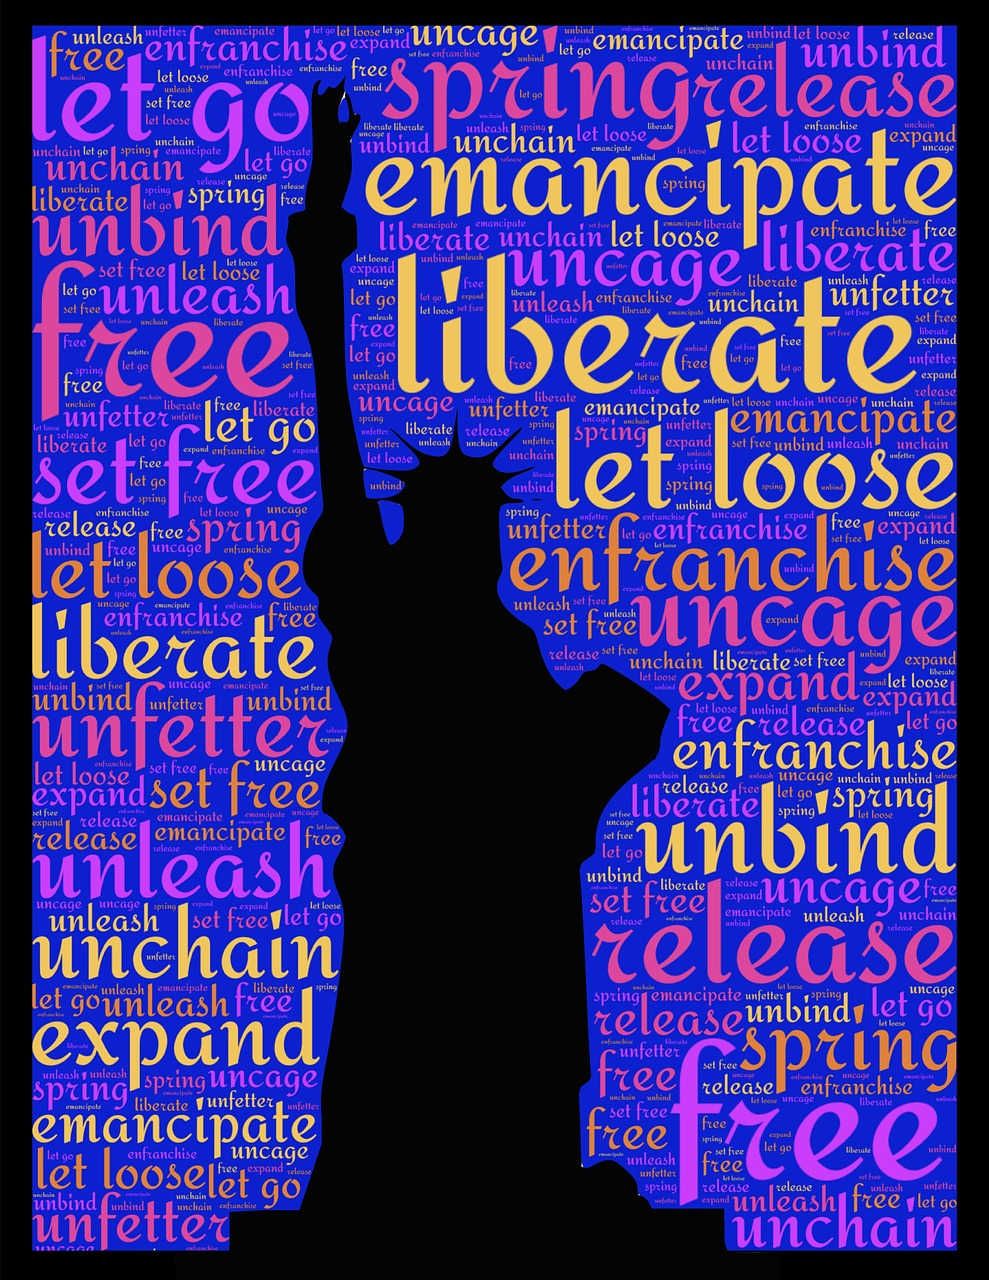 statue of liberty liberty liberate free photo